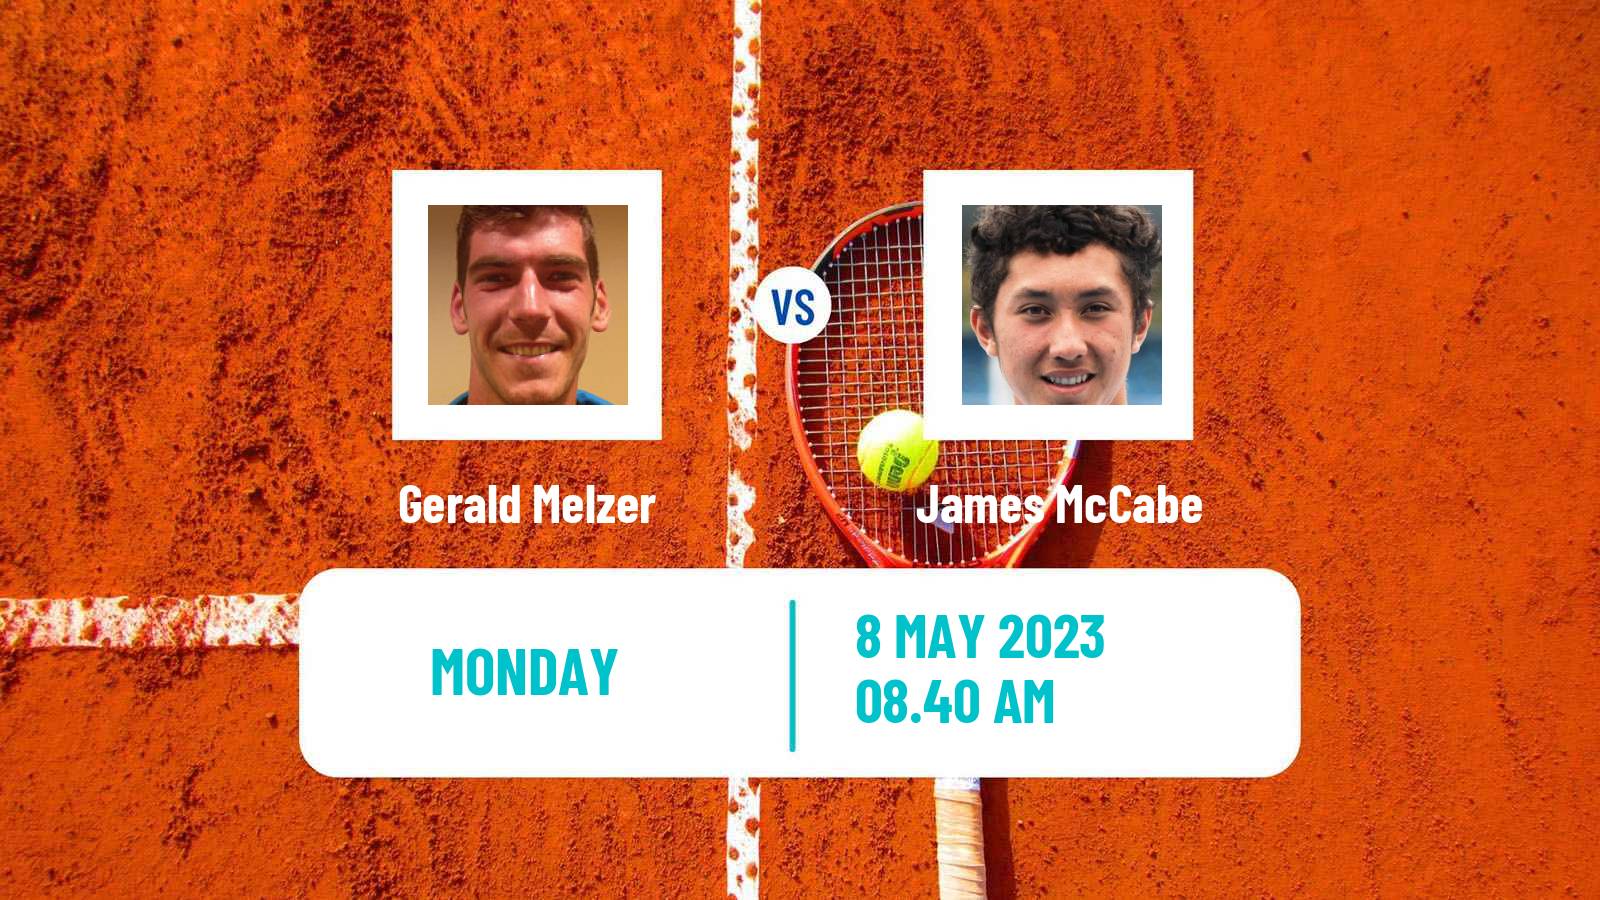 Tennis ATP Challenger Gerald Melzer - James McCabe